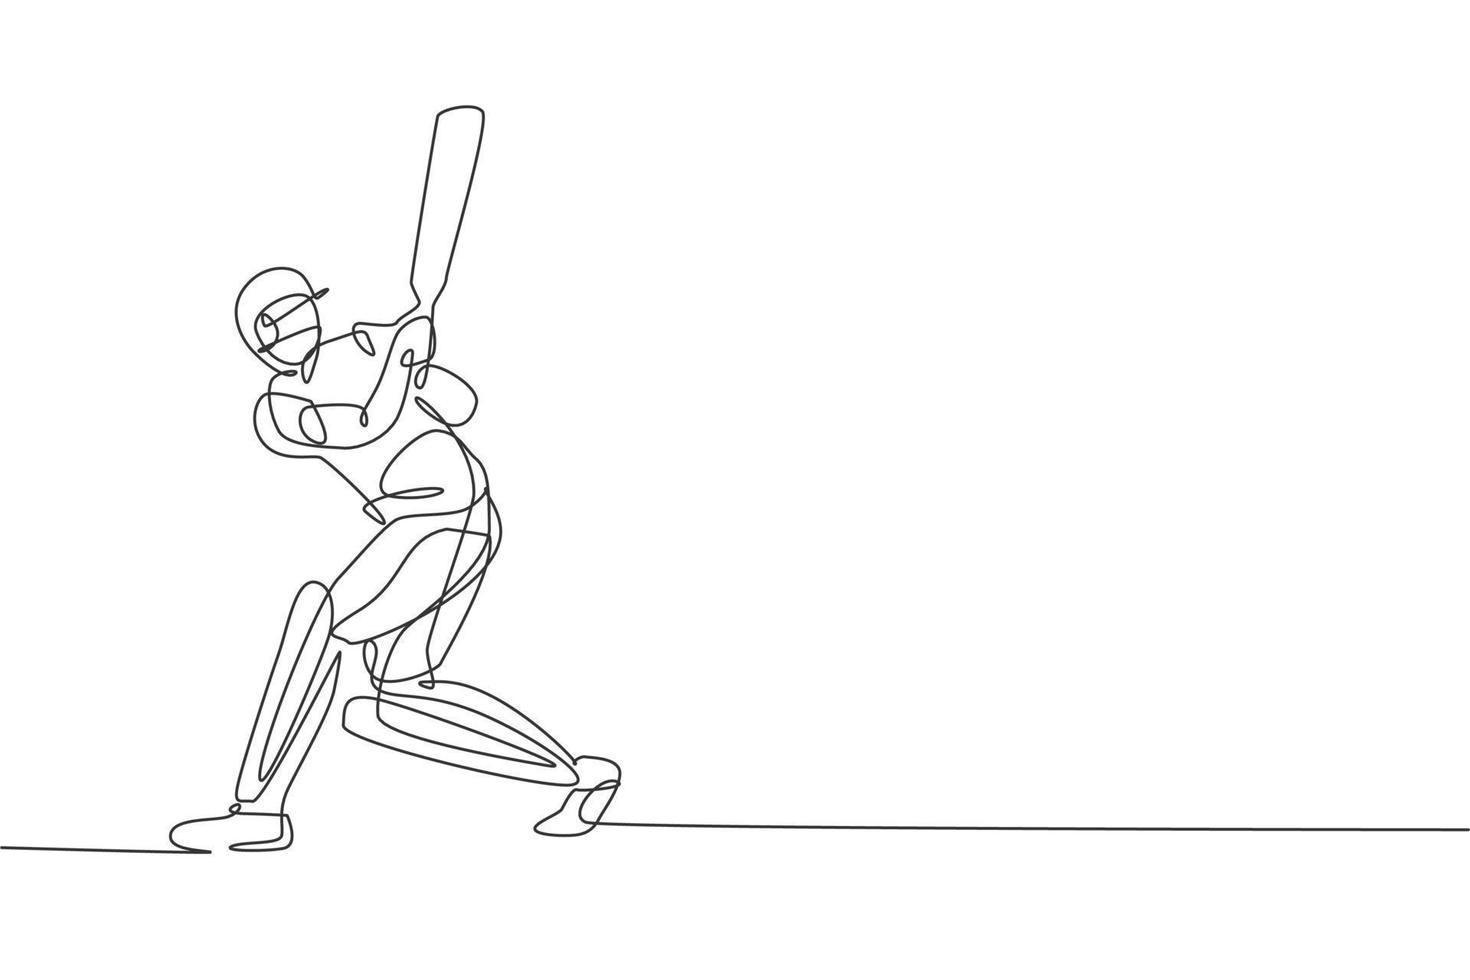 einzelne fortlaufende Linienzeichnung des jungen agilen Cricket-Spielers, der übt, den Ball auf der Feldvektorillustration zu treffen. Sportübungskonzept. trendiges One-Line-Draw-Design für Cricket-Werbemedien vektor